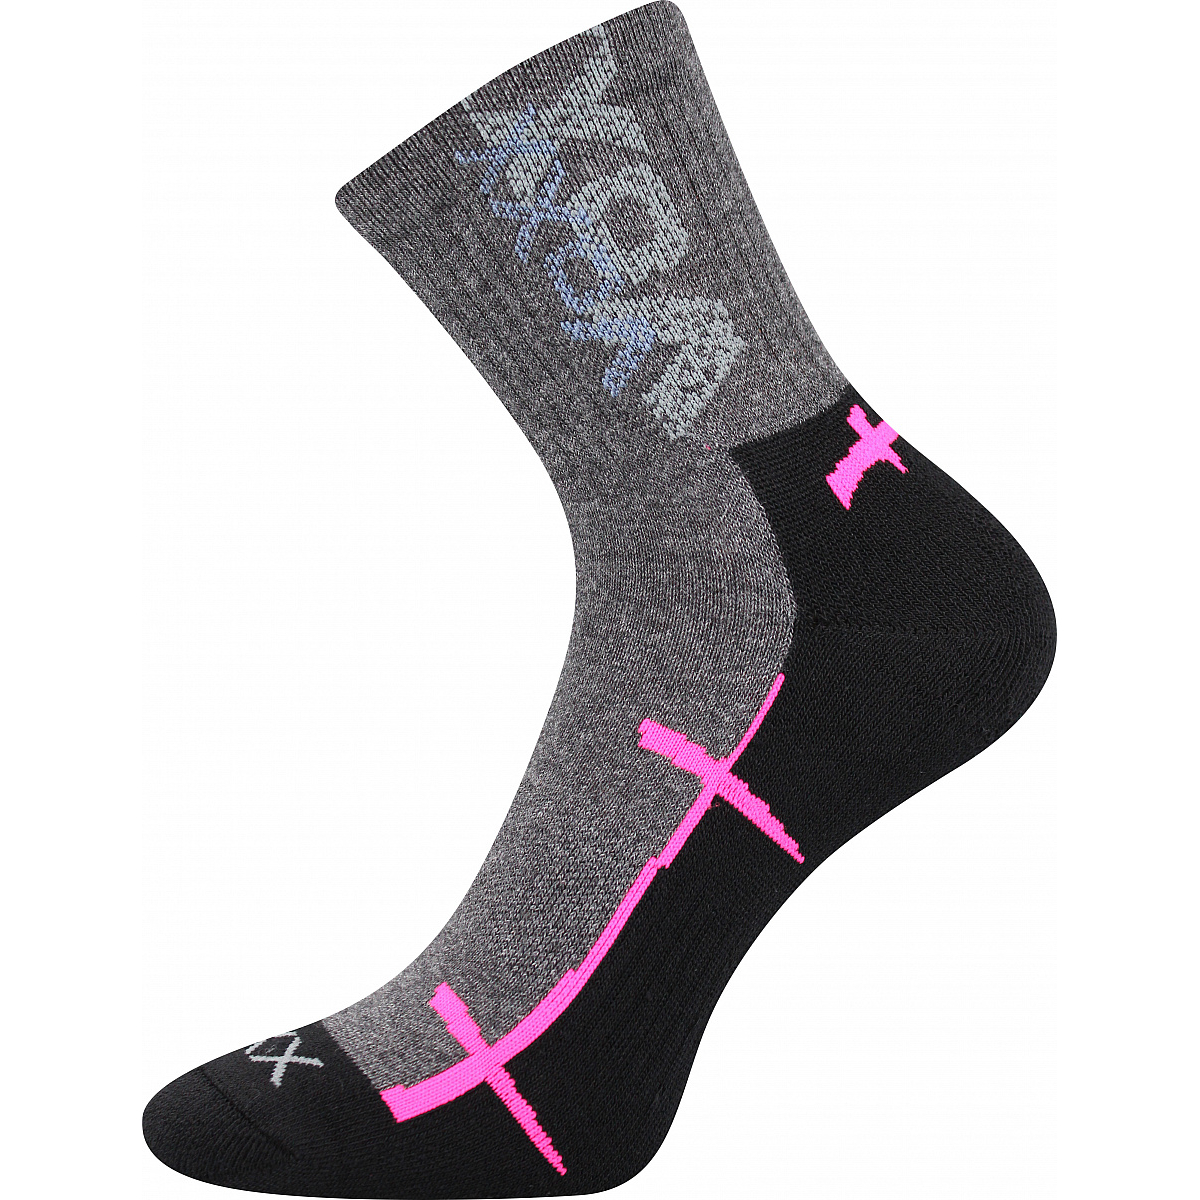 Sportovní ponožky Voxx Walli - šedé-růžové, 35-38